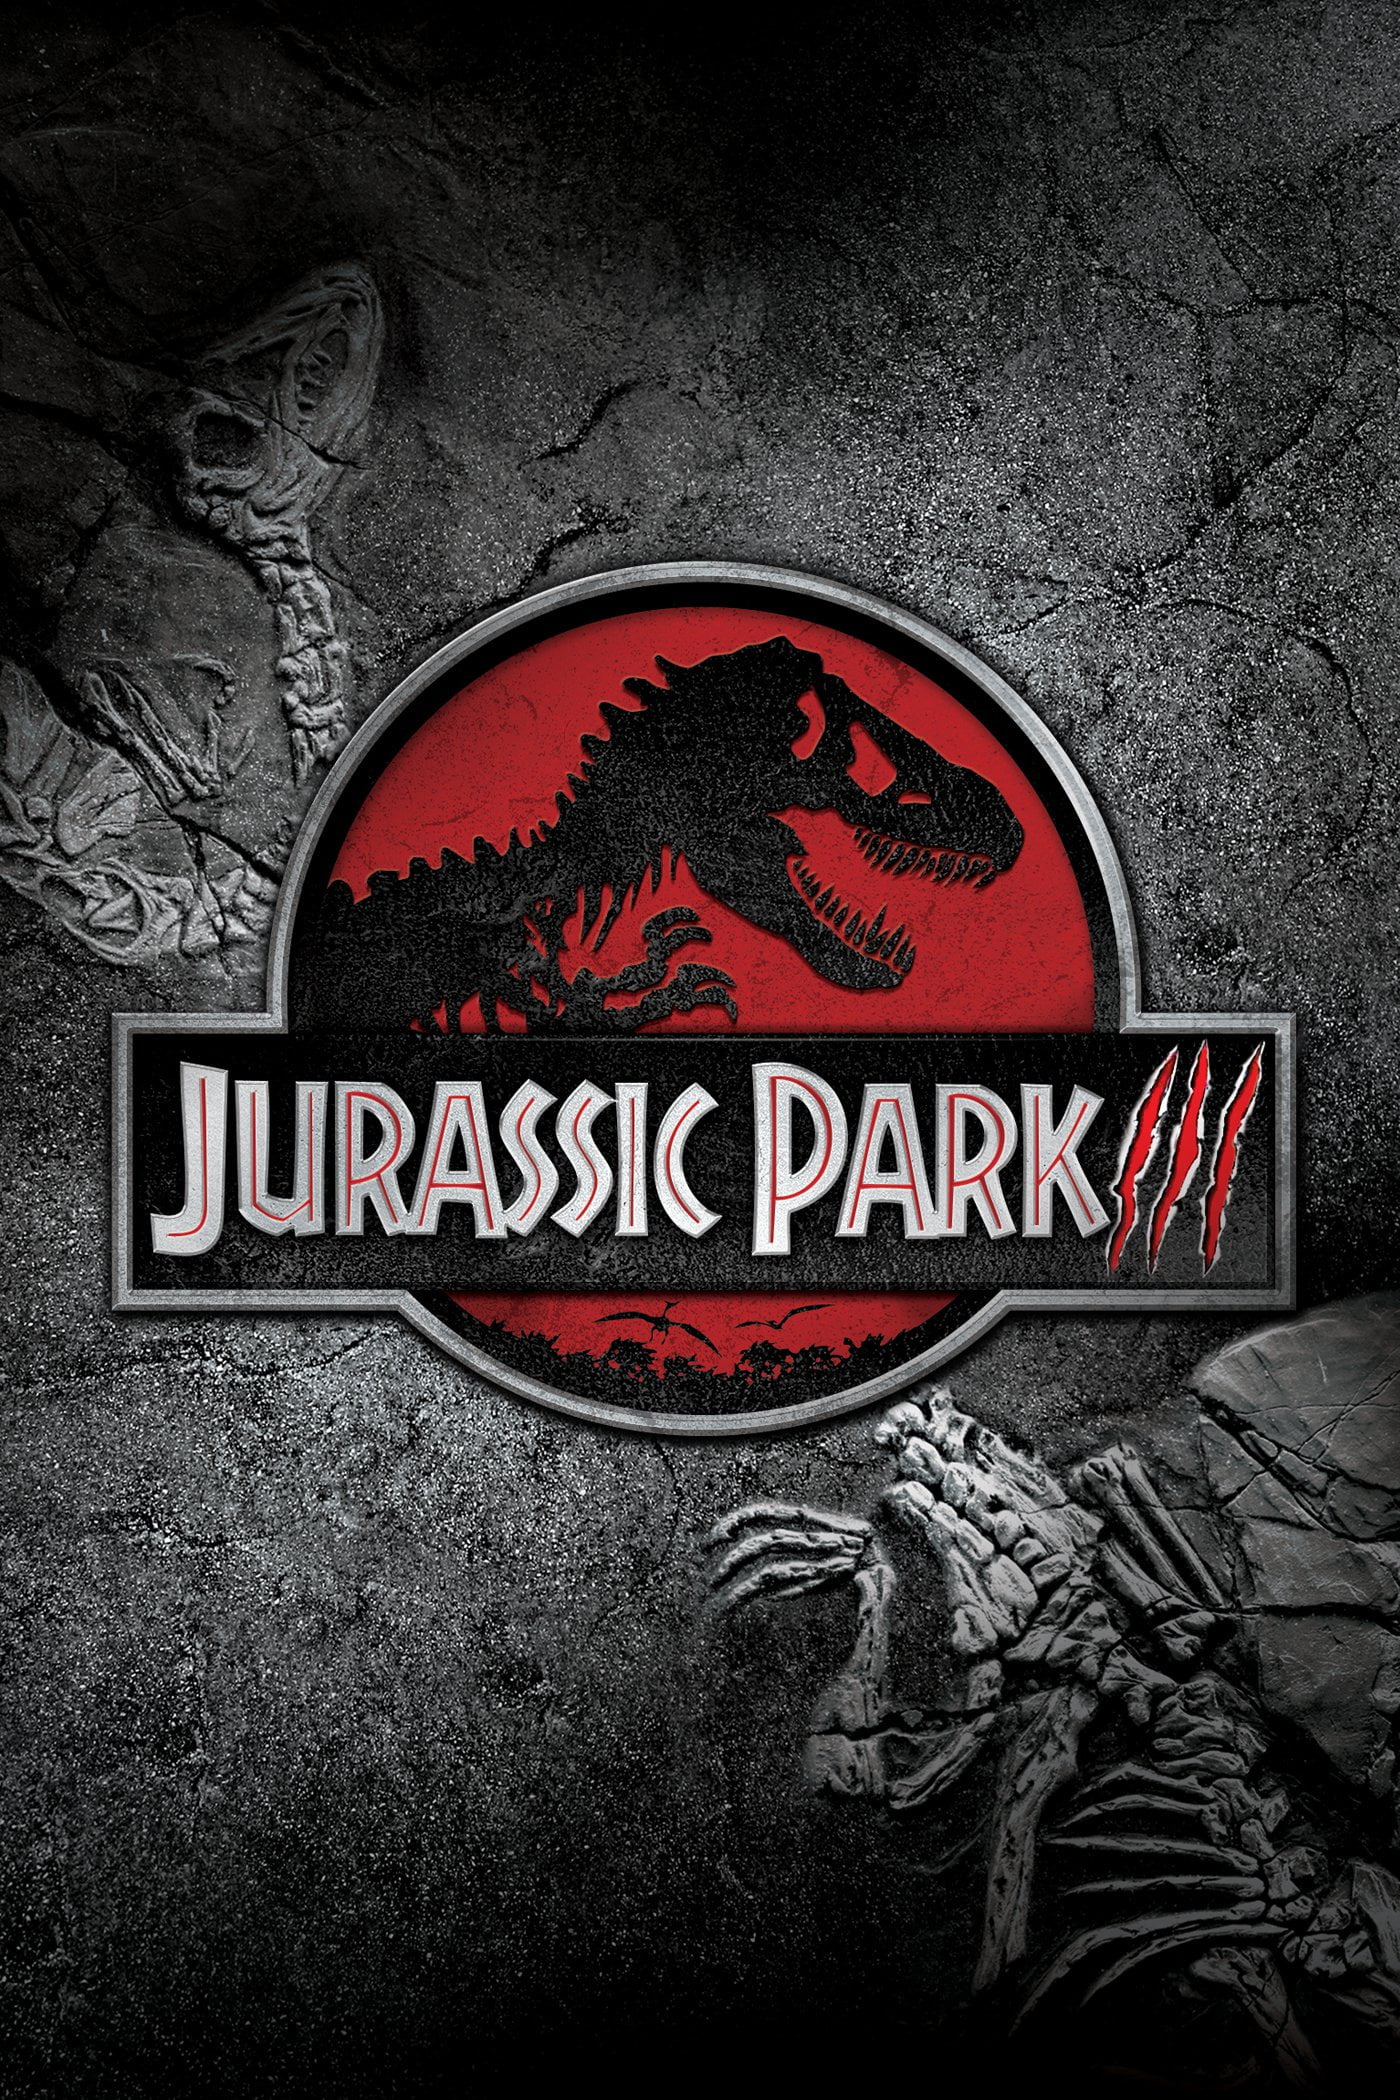 Poster for the filmen "Jurassic Park III"